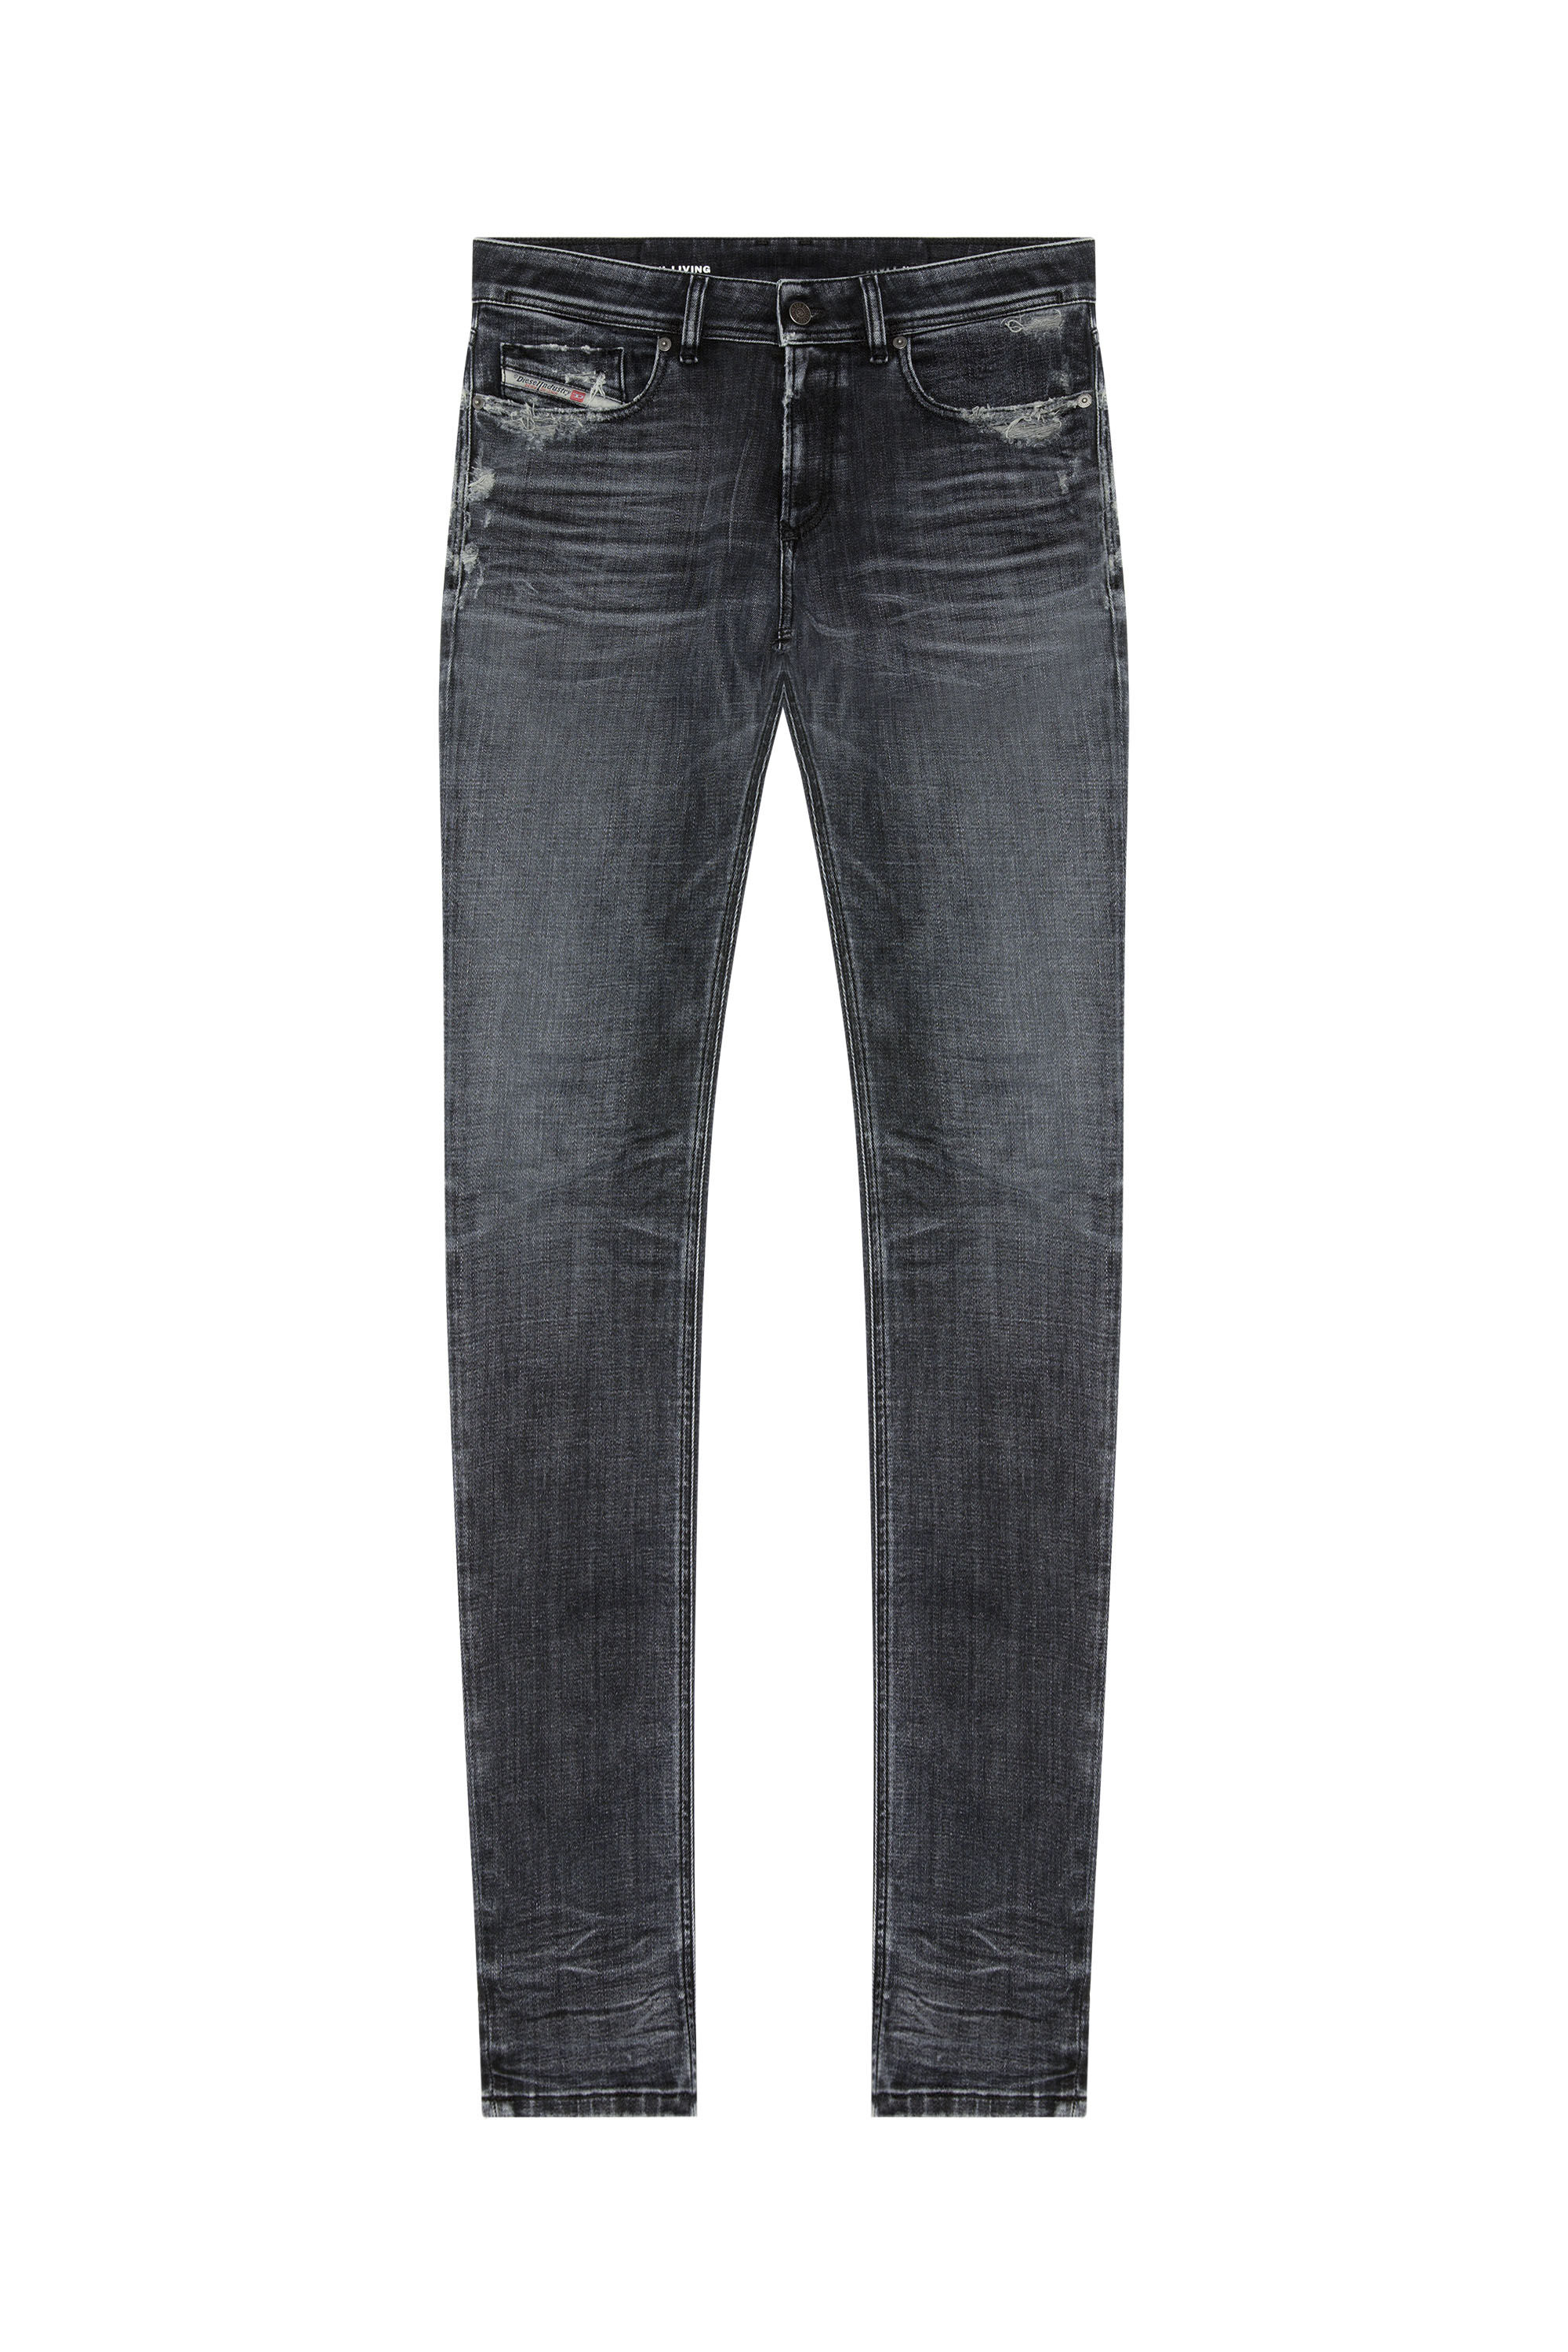 Diesel - Skinny Jeans 1979 Sleenker 09G37, Black/Dark grey - Image 2